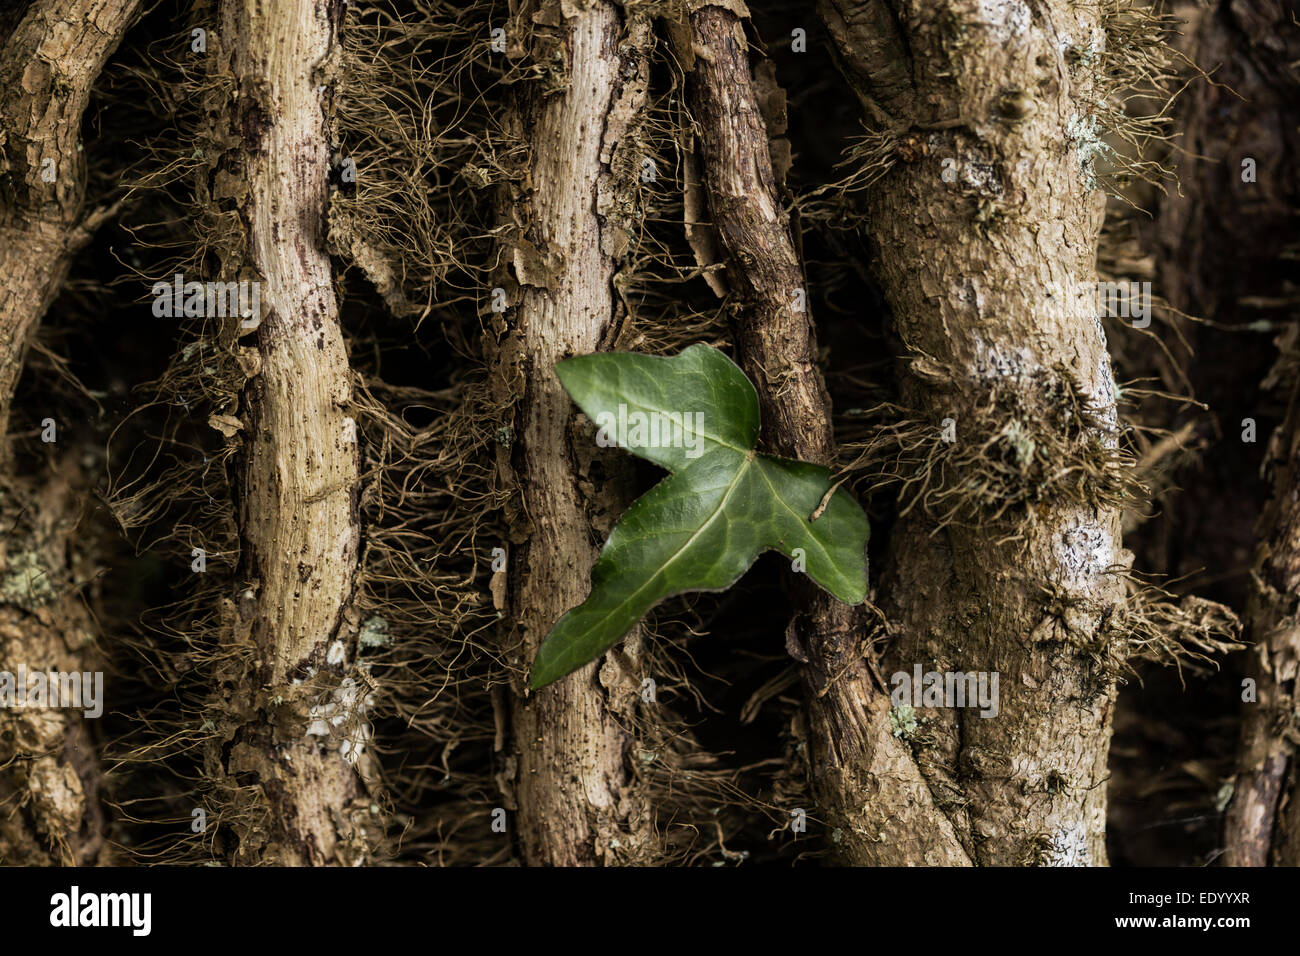 La hiedra crece en un árbol de hoja caduca. Foto de stock